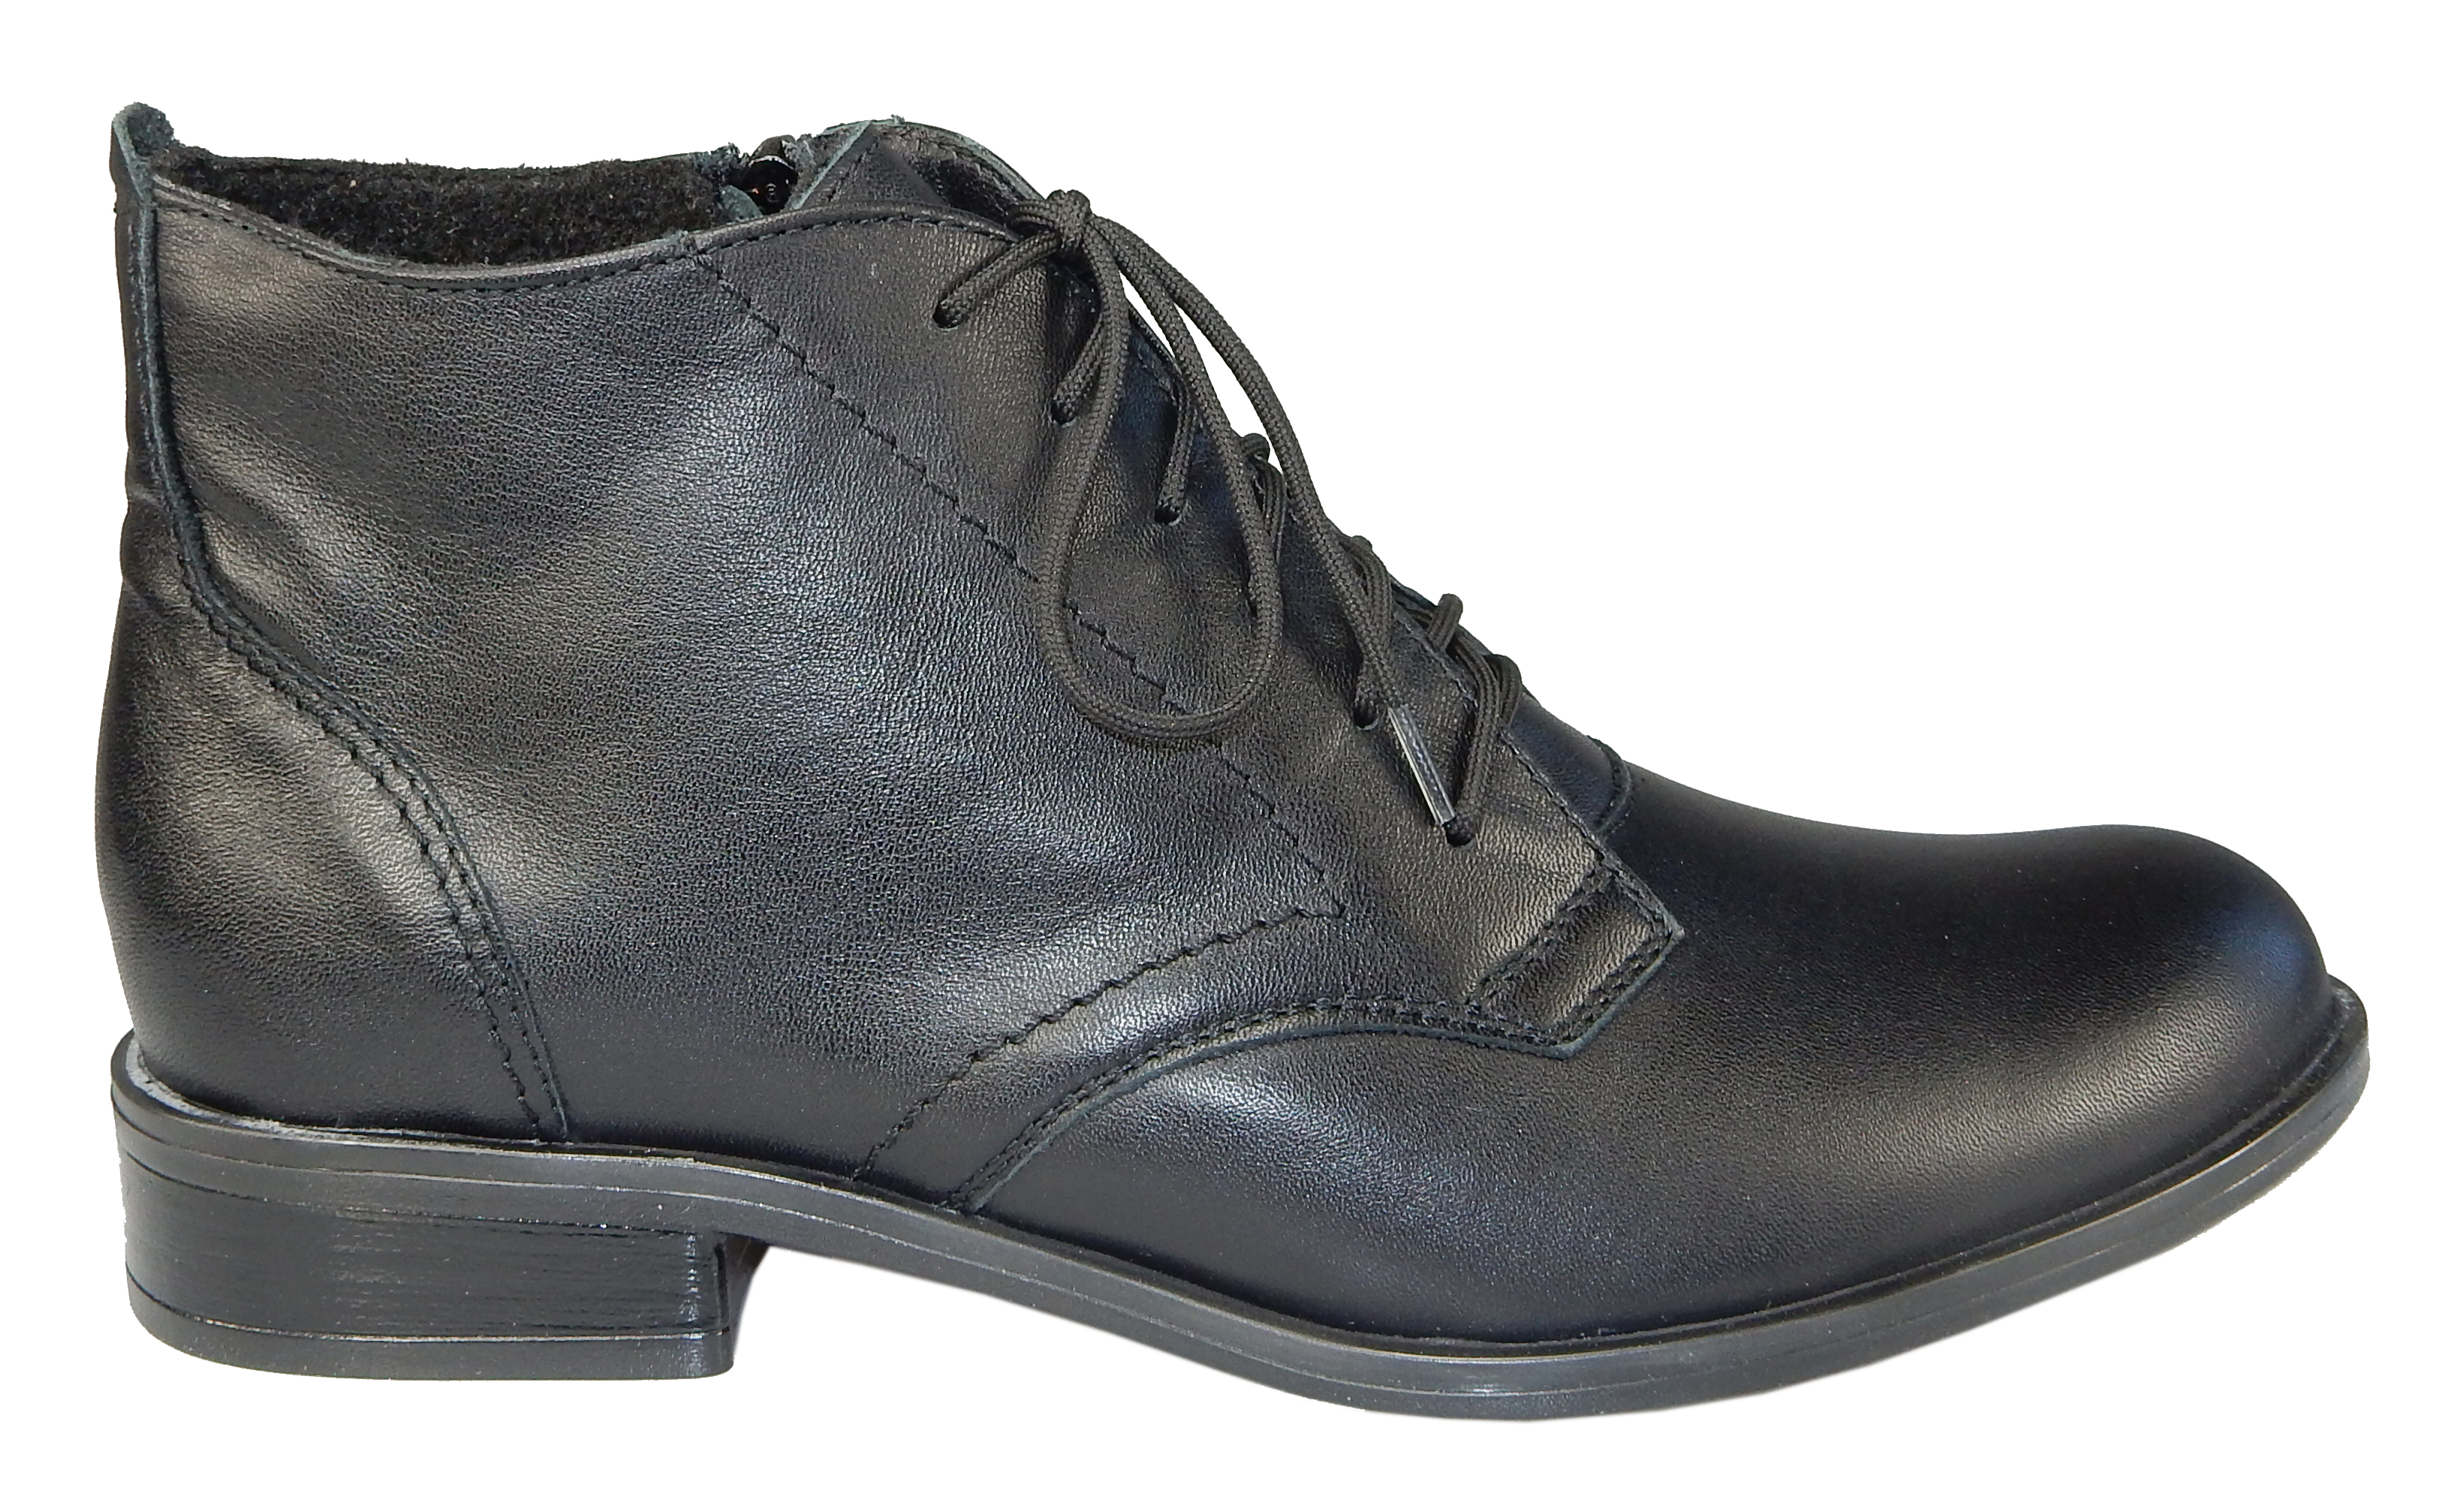   Orto plus 729 dámská kotníková obuv černá